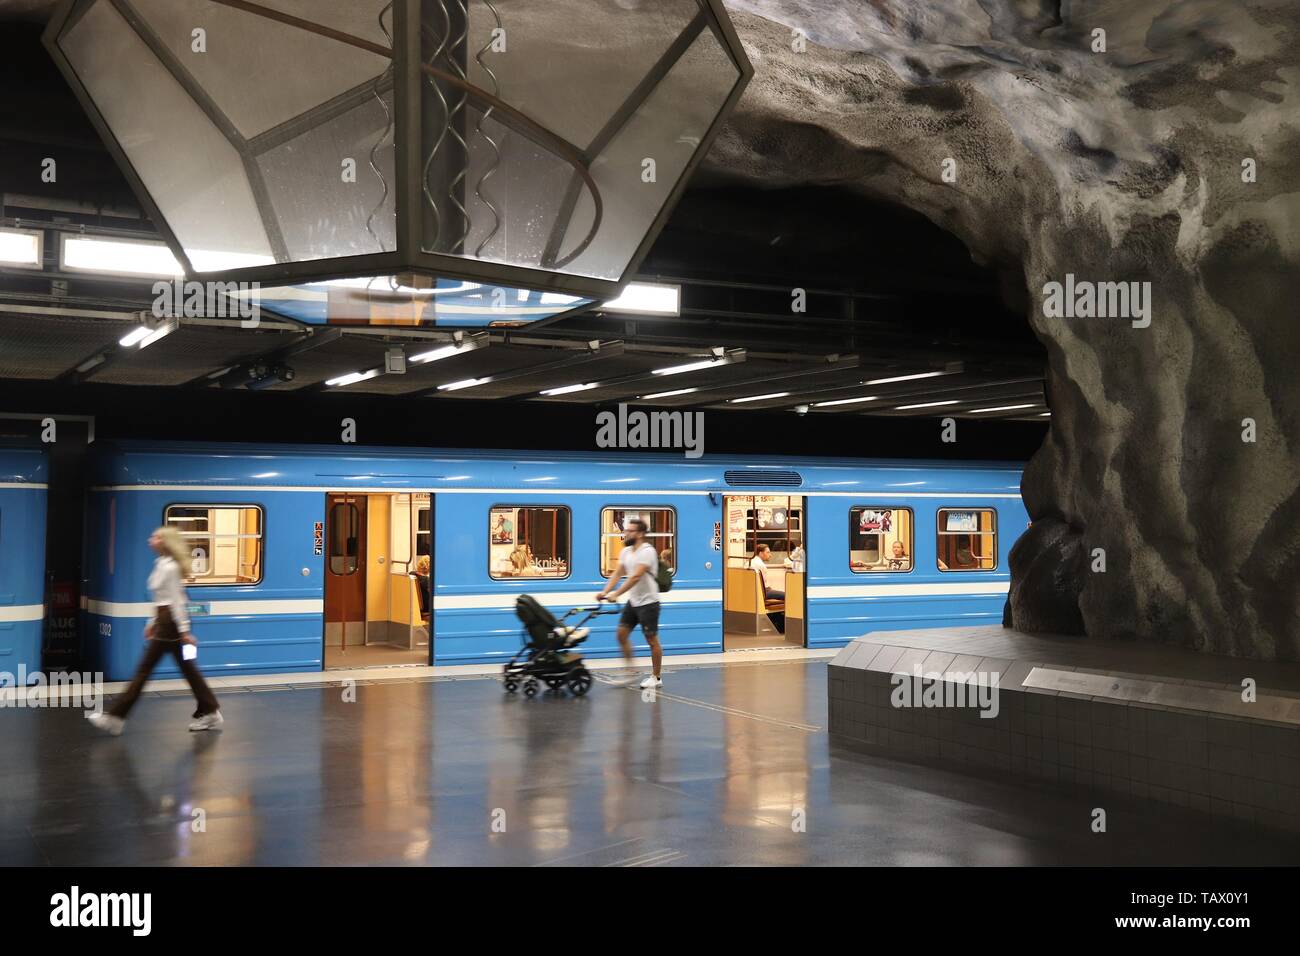 STOCKHOLM, Schweden - 24. AUGUST 2018: die Stockholmer U-Bahn (T-bana) U-Bahn Station in Schweden. Stockholm Metro ist für seine künstlerischen Station interio bekannt Stockfoto